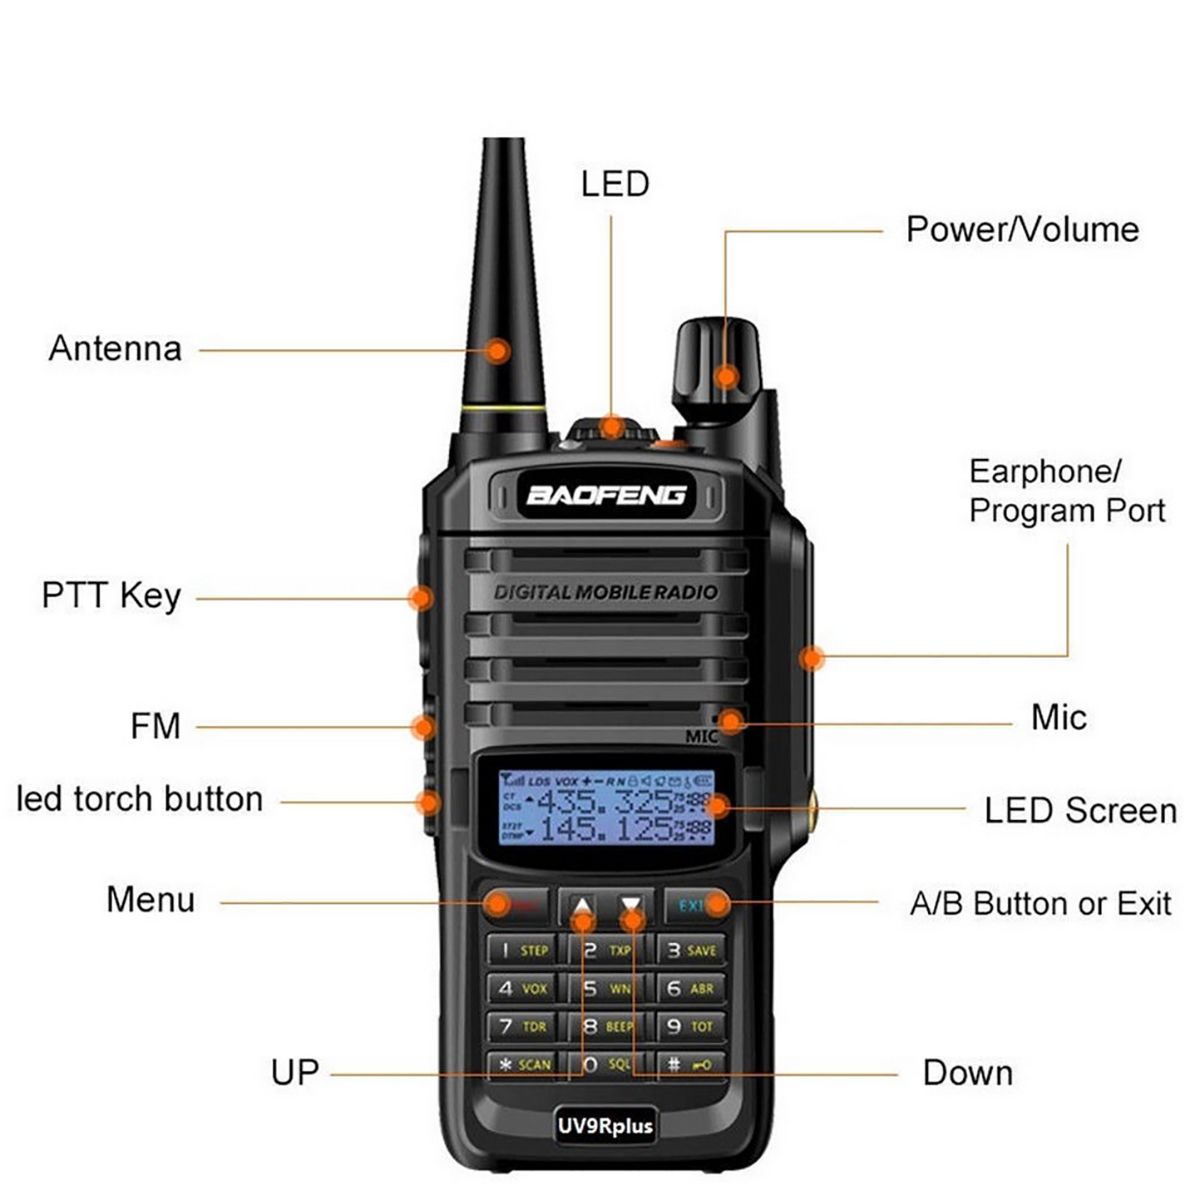 BAOFENG-UV-9R-Plus-Walkie-Talkie-VHF-UHF-Dual-Band-Handheld-Two-Way-Radio-Waterproof-IP68-1397572